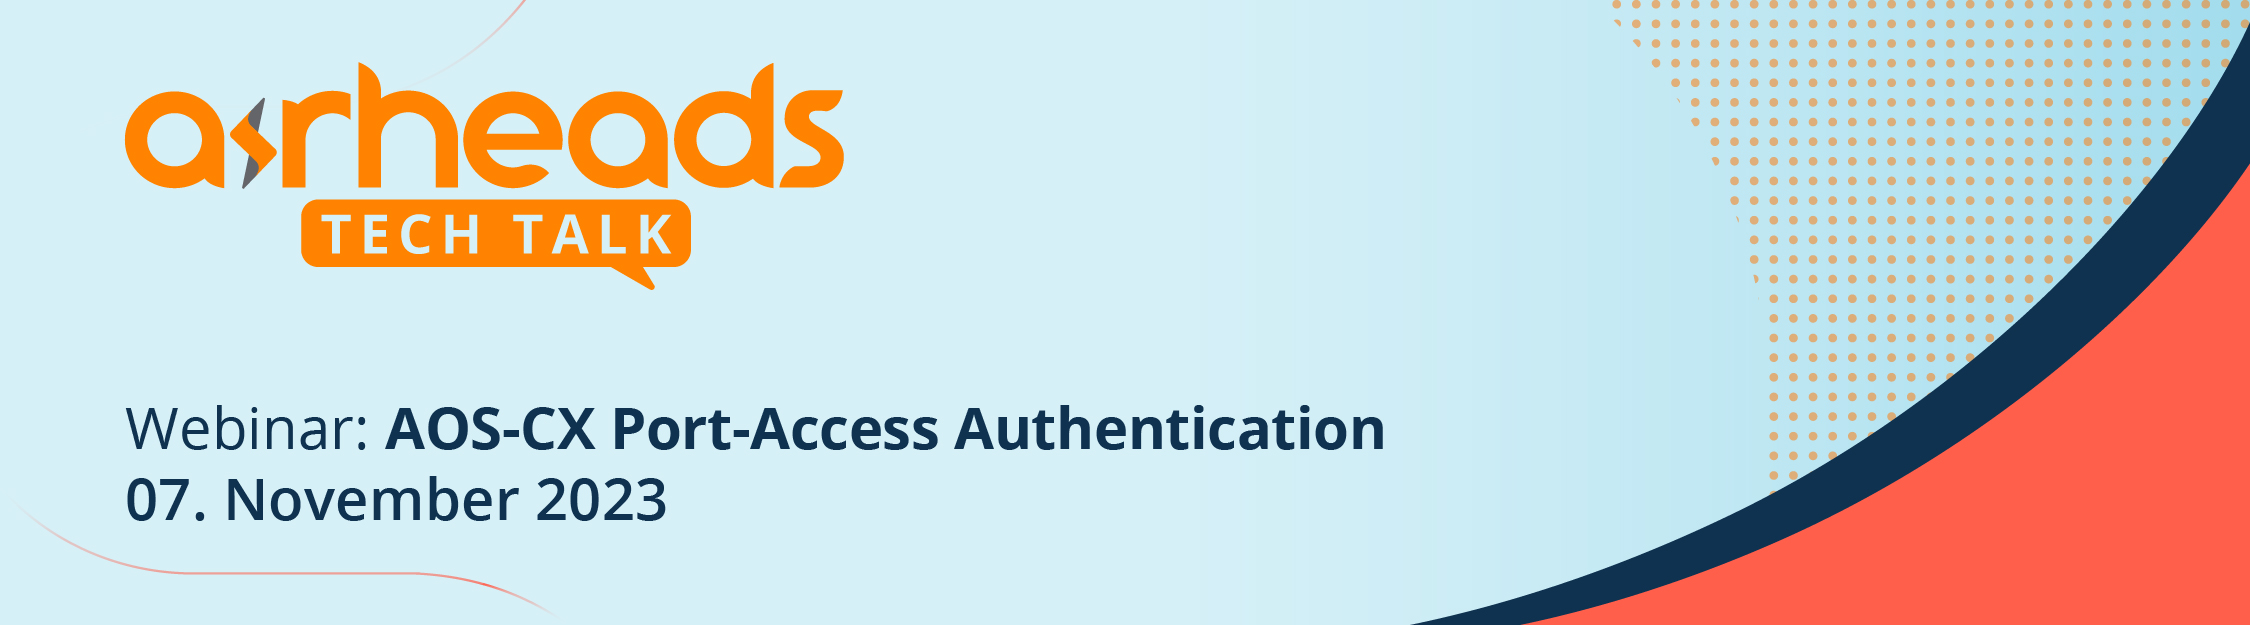 Airheads TechTalk - Best Practice: AOS-CX Port-Access Authentication